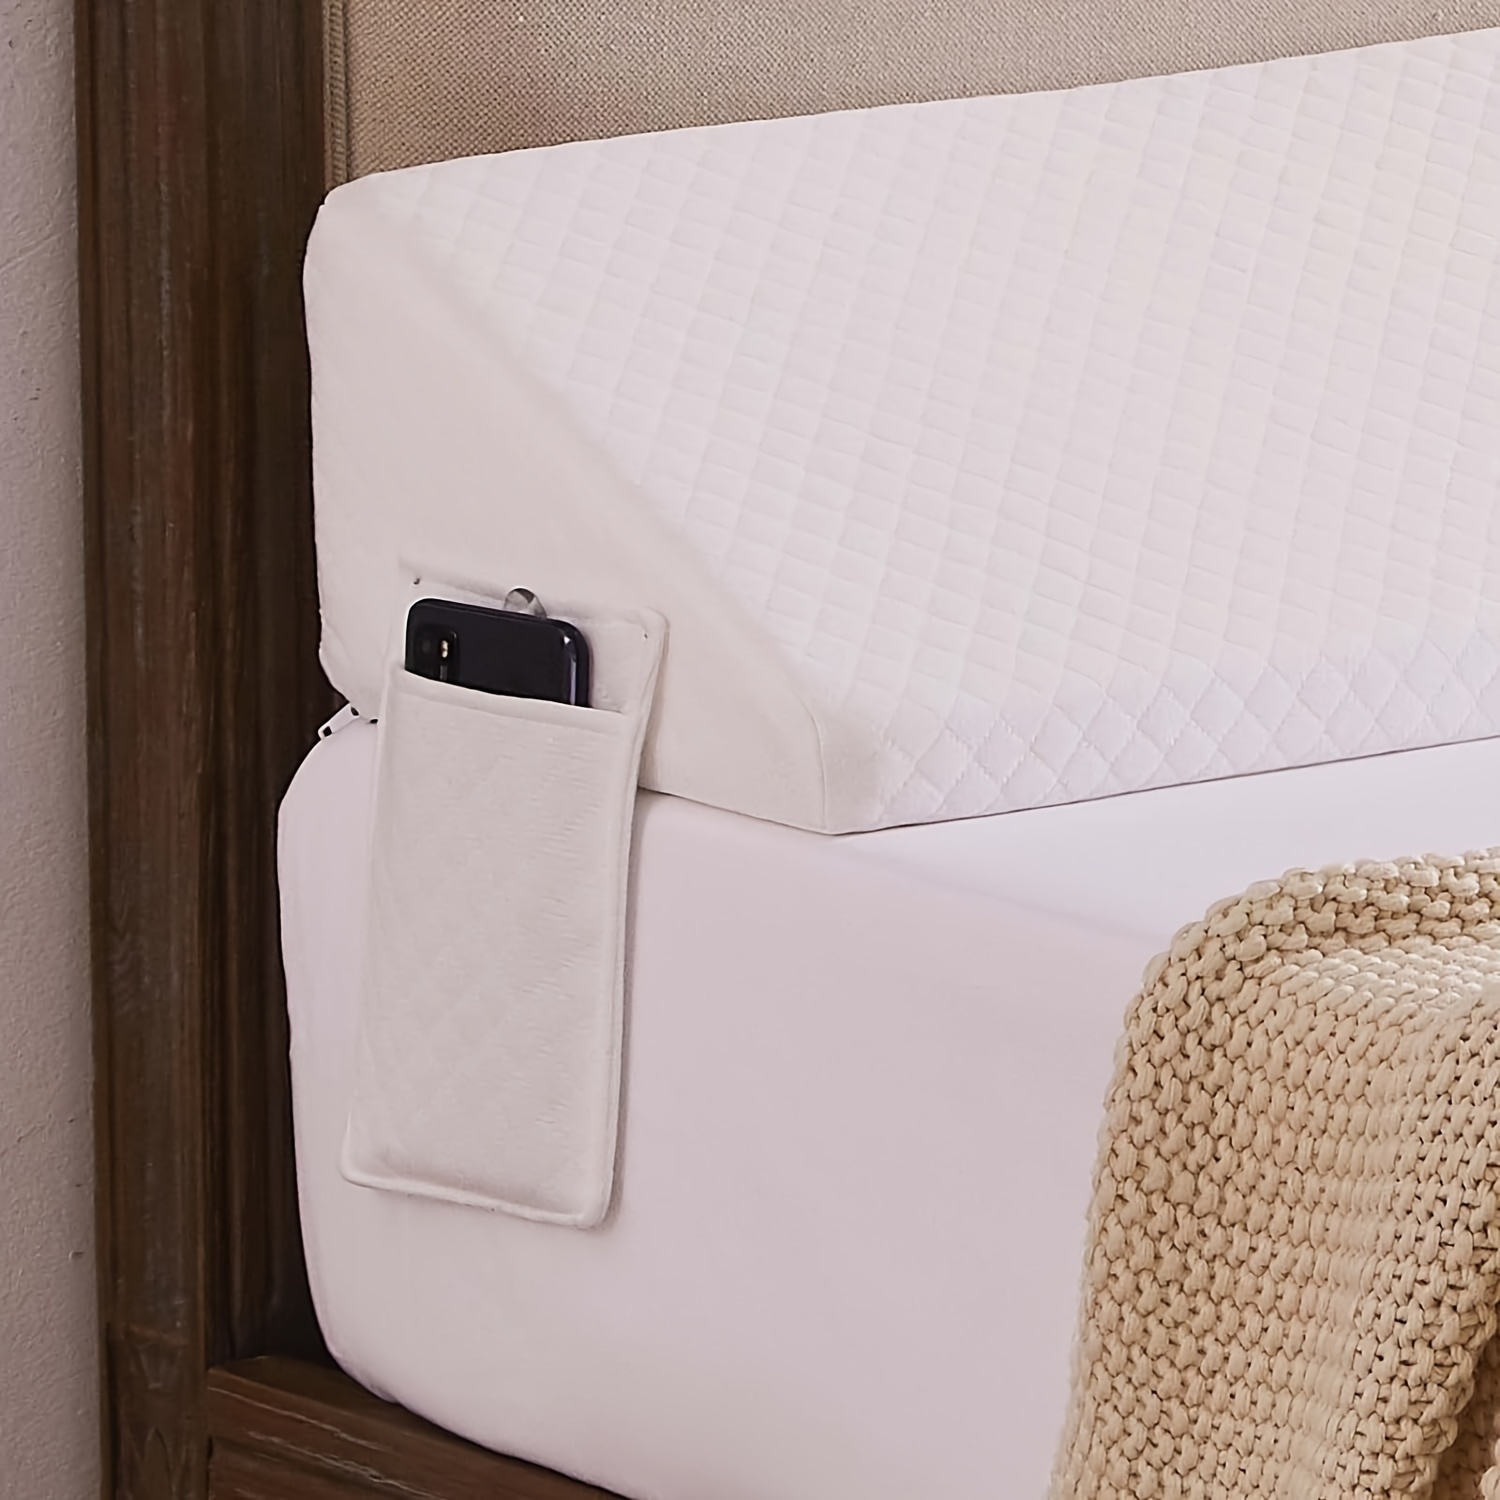 Focuprodu Bed Wedge Pillow. Soft Velvet Bed Gap Filler for Mattress Seams  (0-7),Snug Stop Mattress Wedge Pillow Fill Gap Between Headboard/Wall and